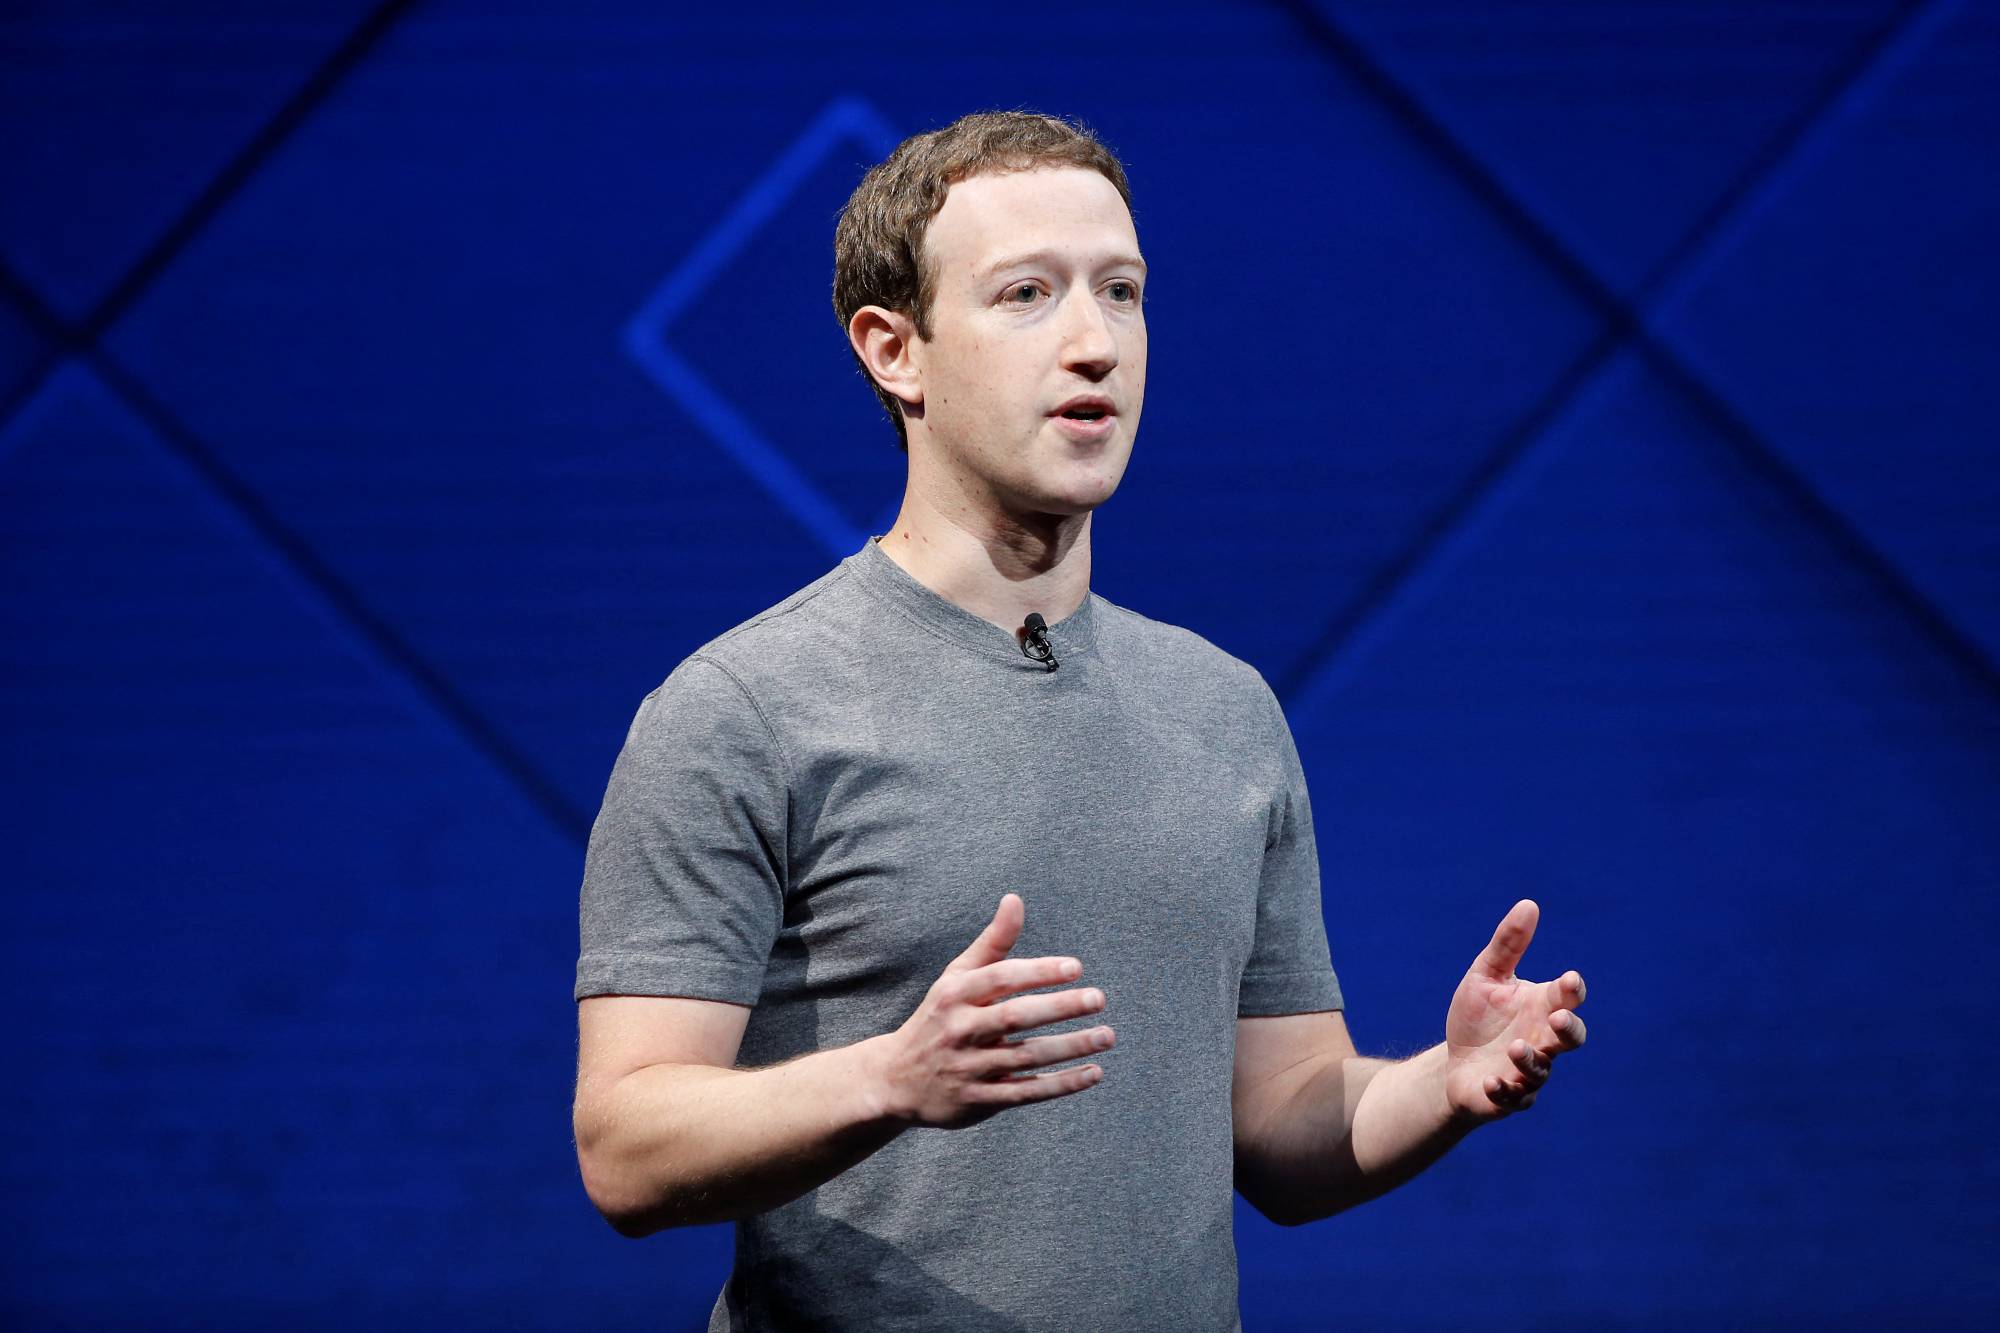 كم يبلغ دخل مارك زوكربيرغ مؤسس «فيسبوك» في الثانية الواحدة؟